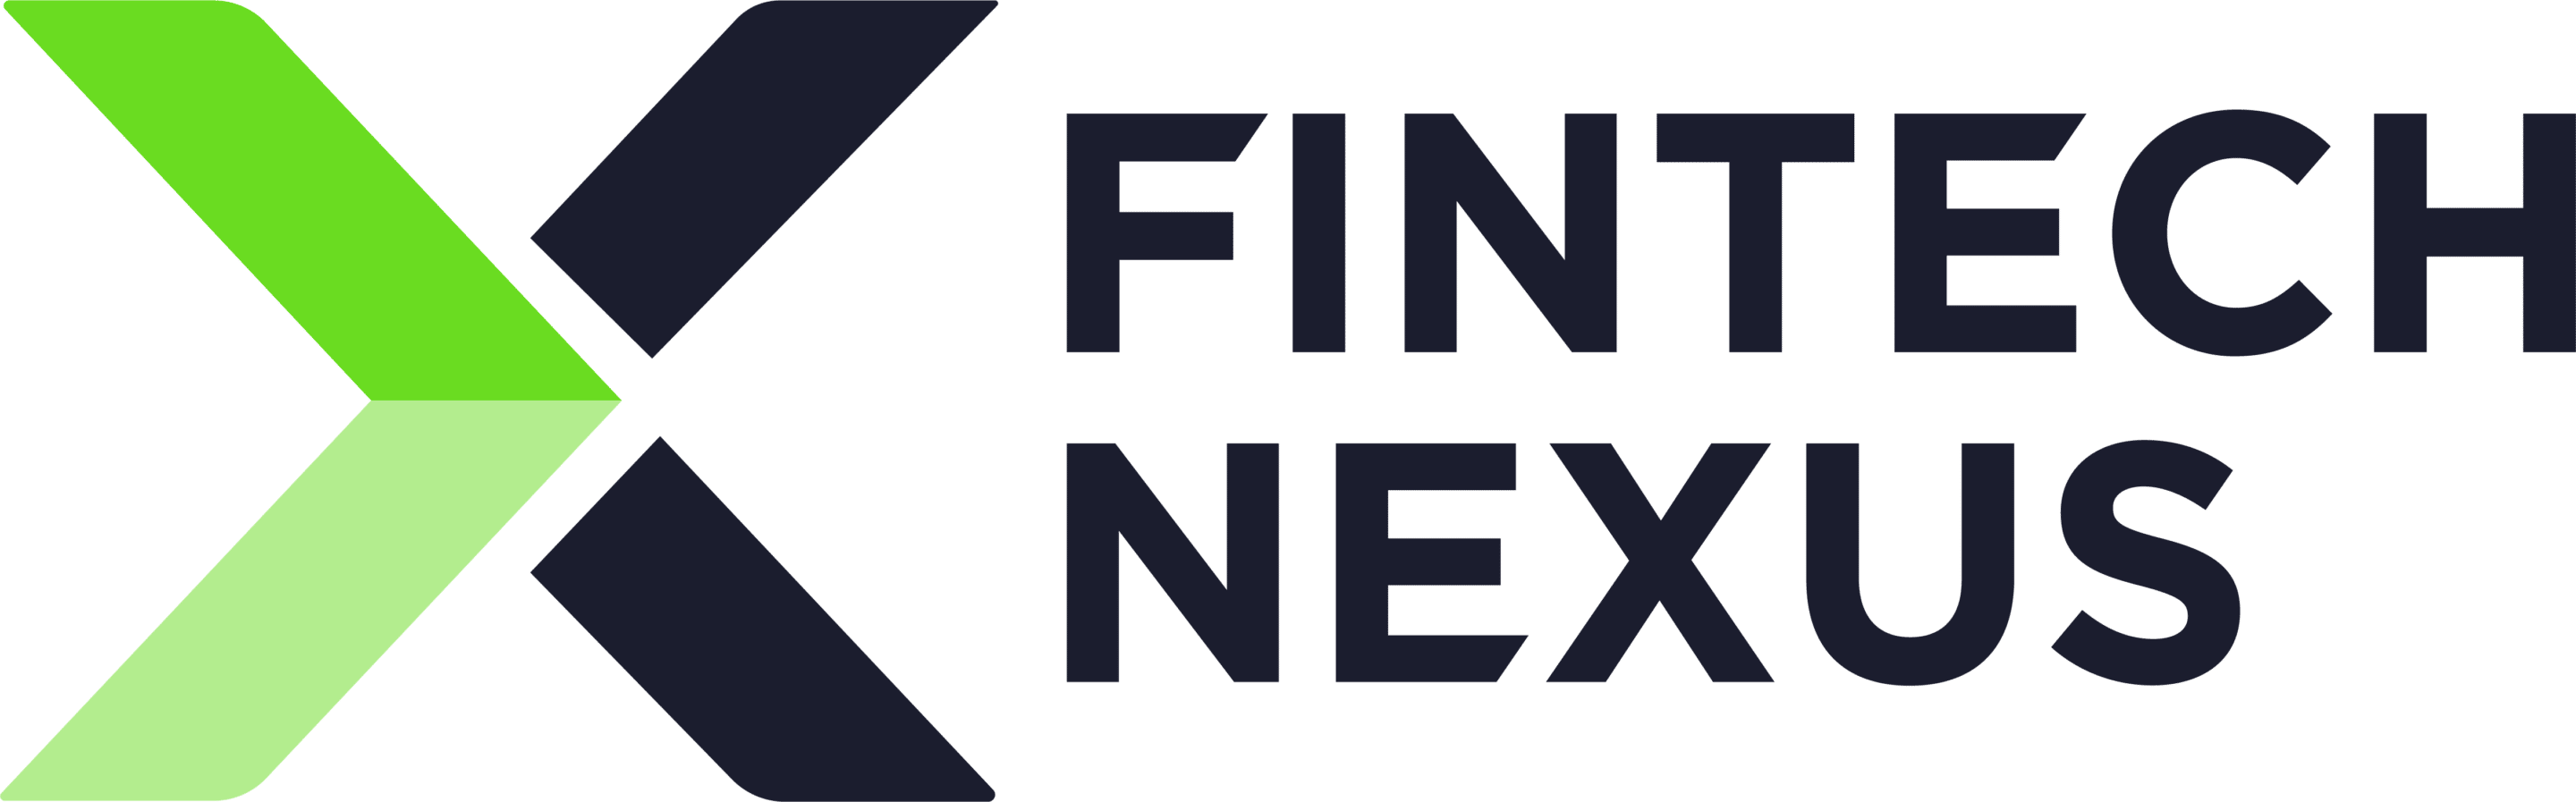 Fintech Nexus USA